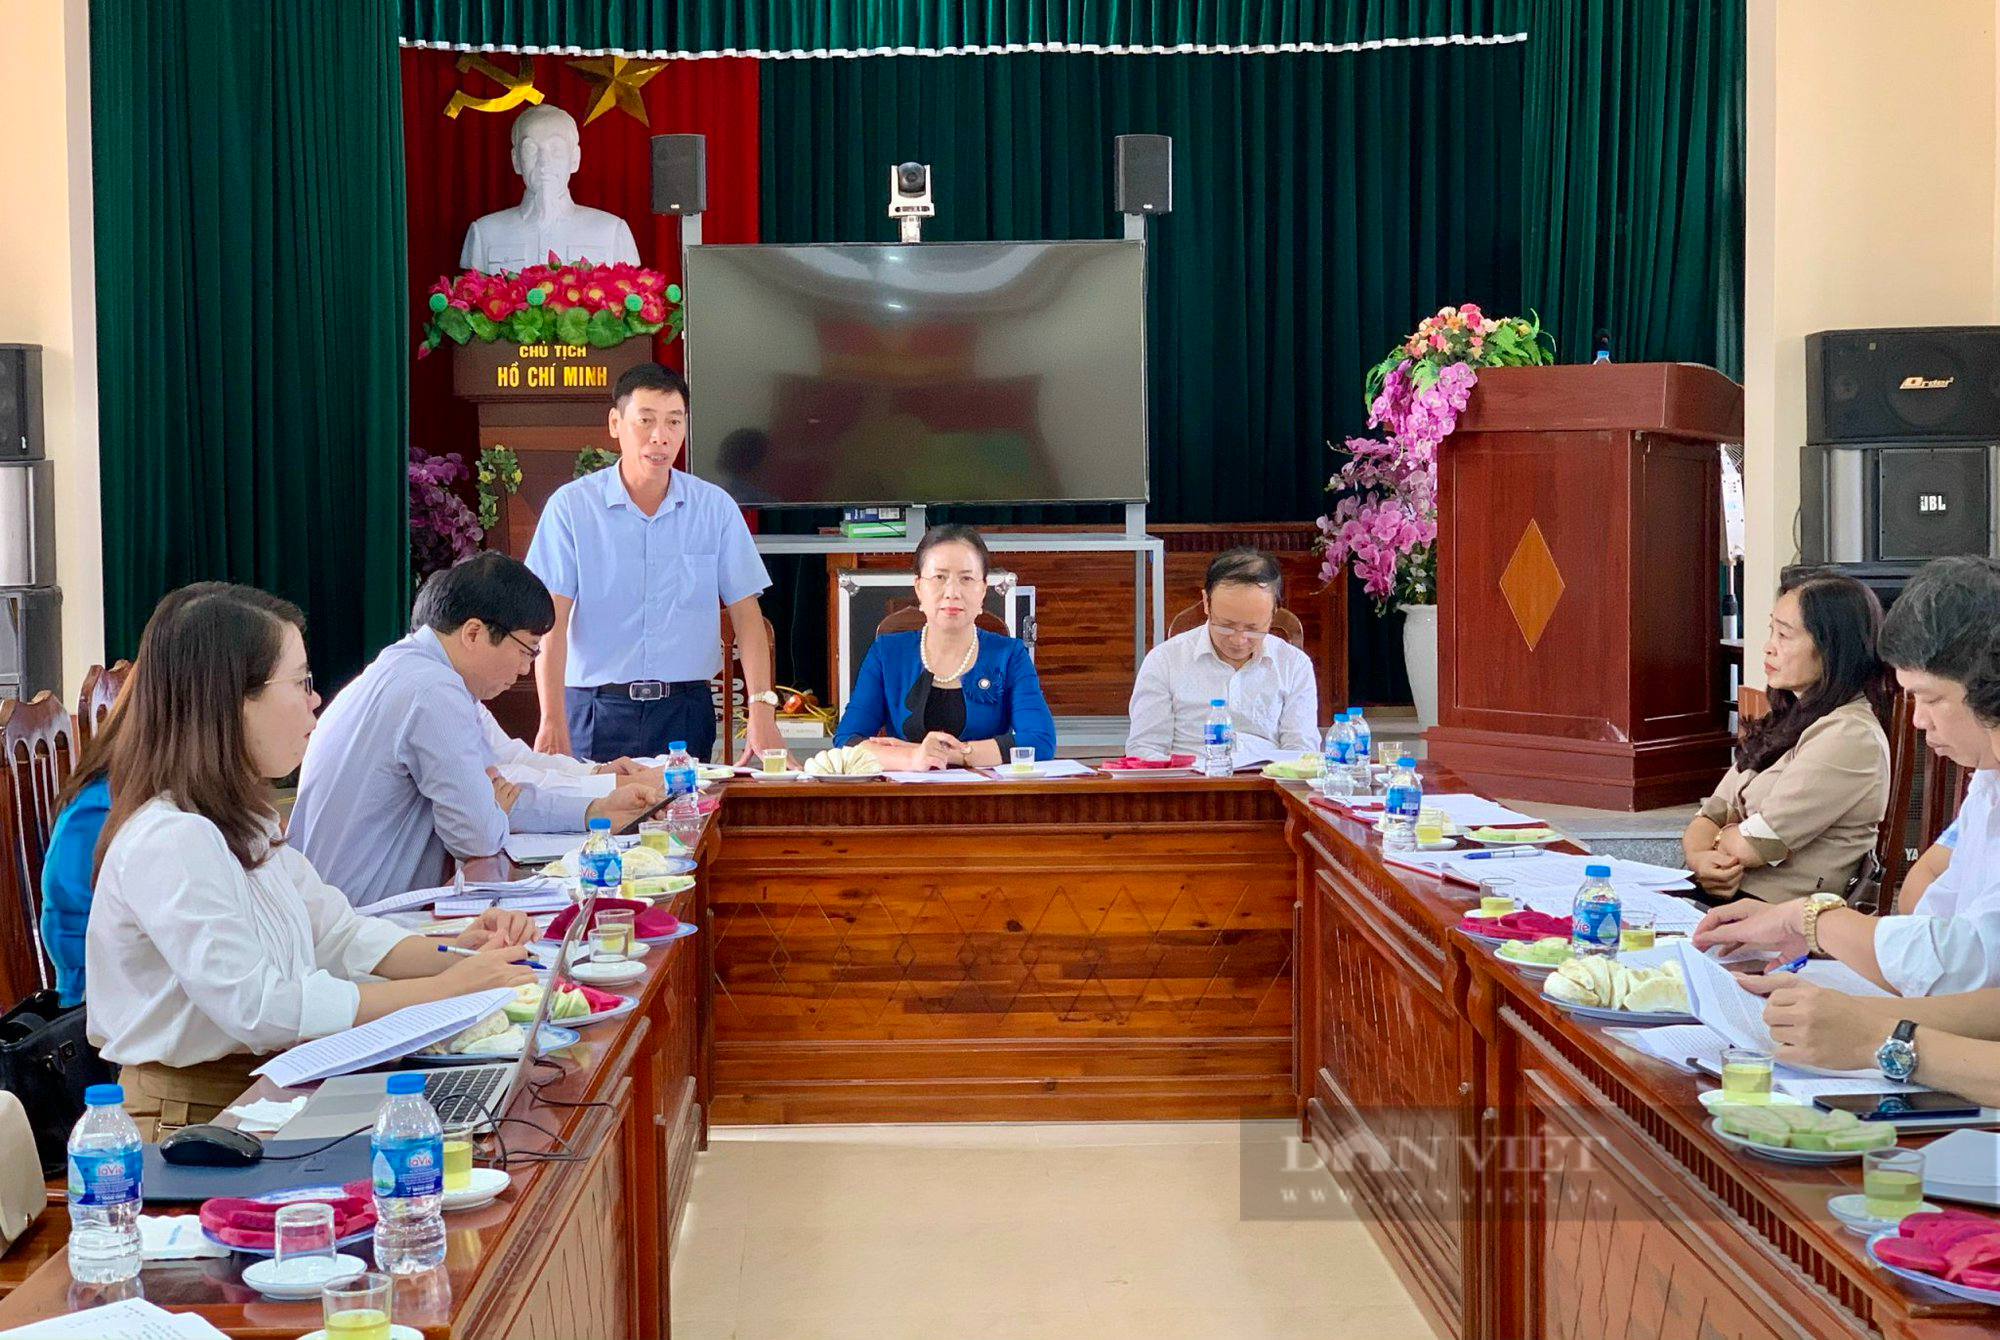 Phó Chủ tịch Hội NDVN Bùi Thị Thơm ấn tượng mô hình trồng nho công nghệ cao của nông dân Hà Nam - Ảnh 6.